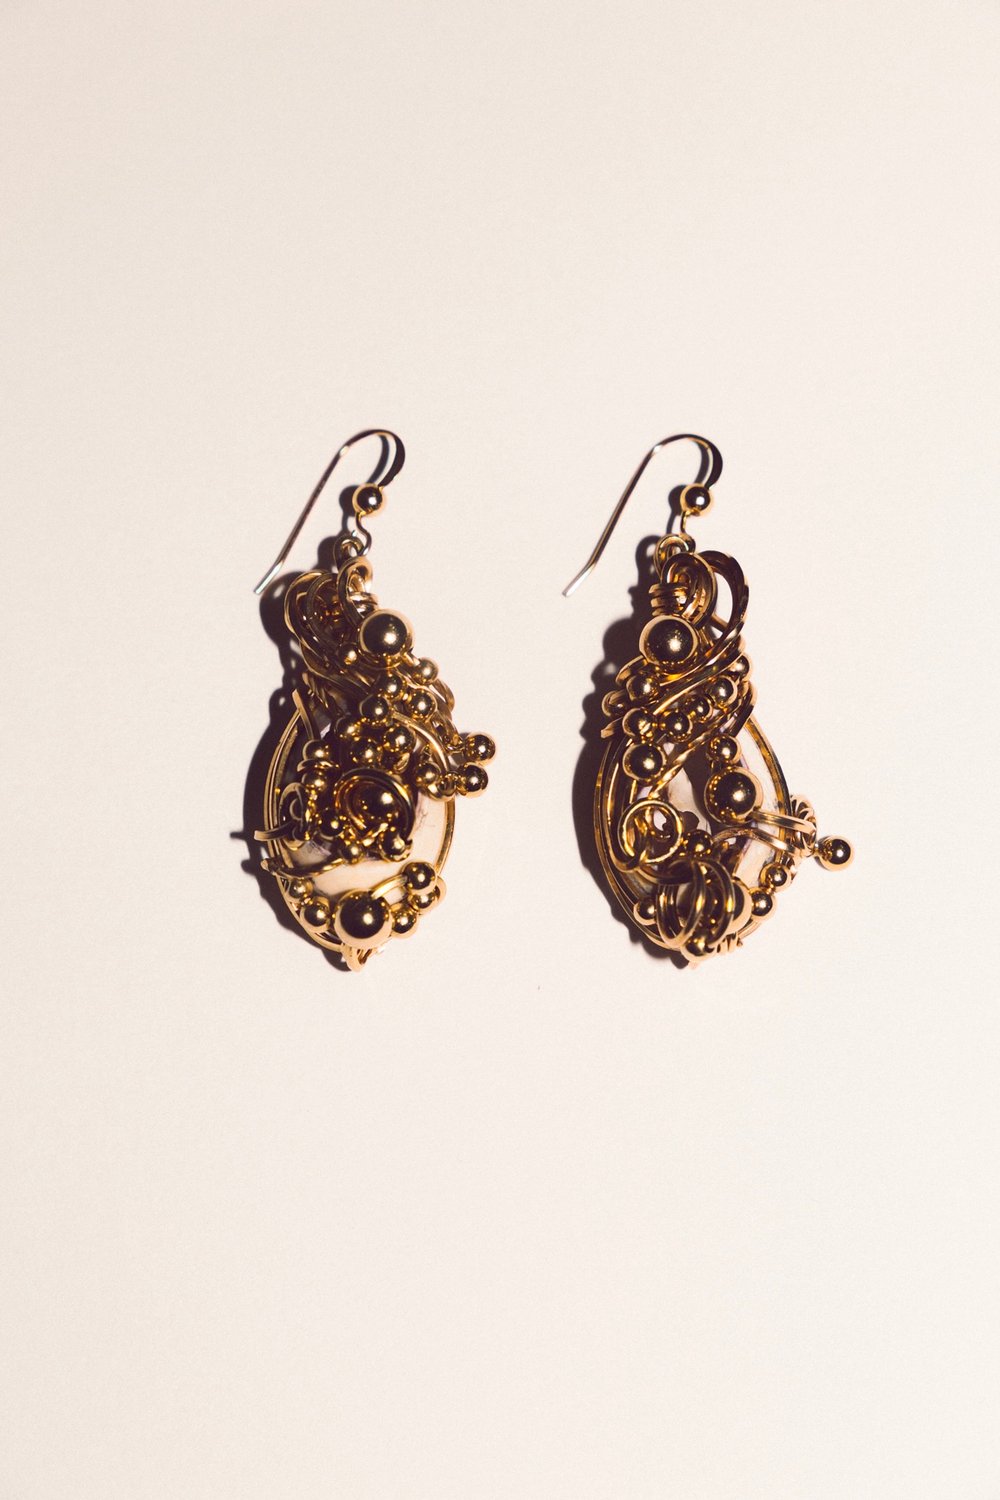 ⟢ Ocean's Second Melody earrings ⟣